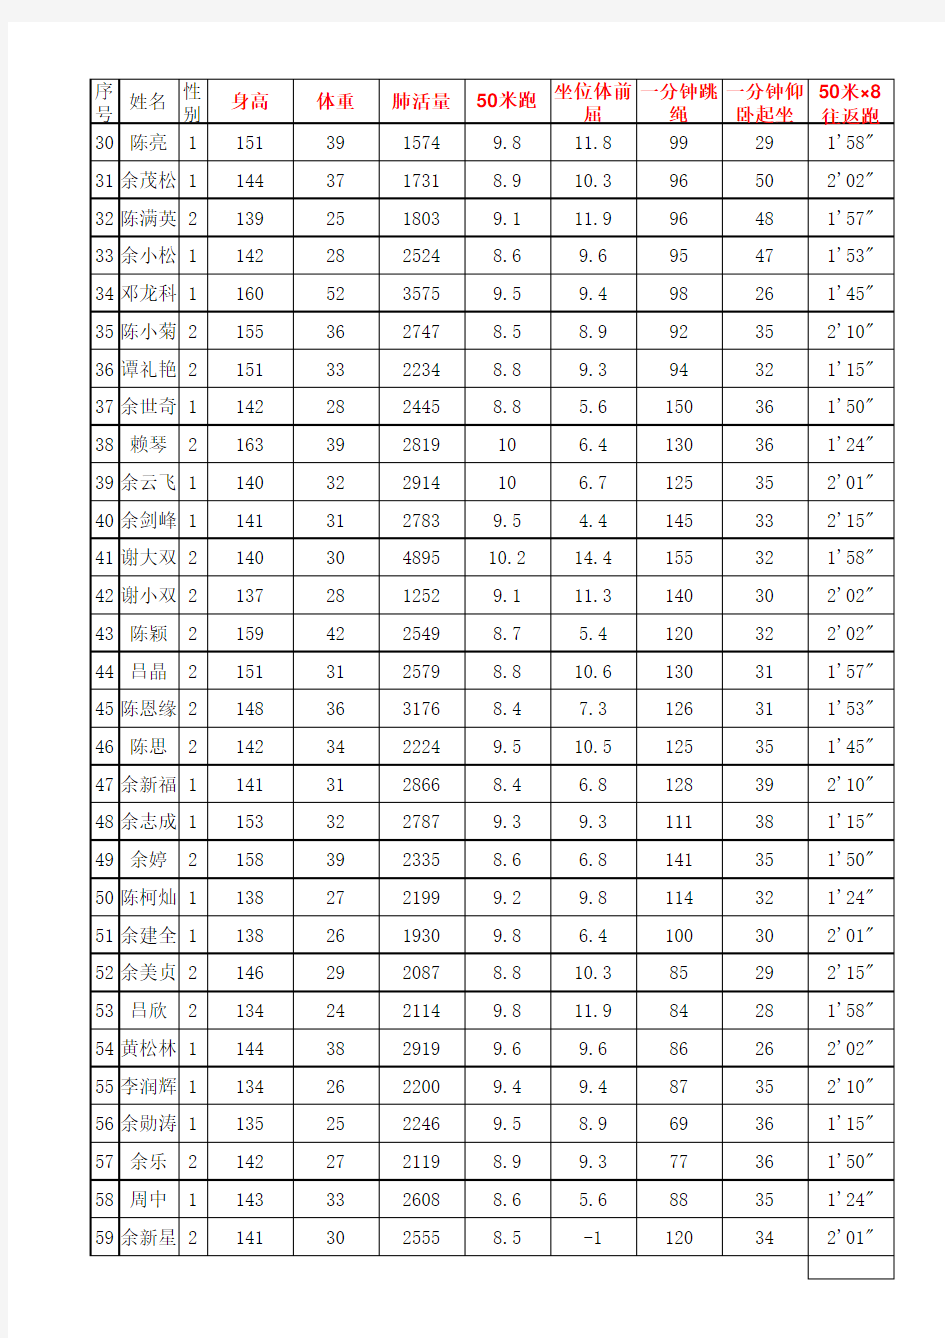 六(2)班、2014下国家体育测试记录表